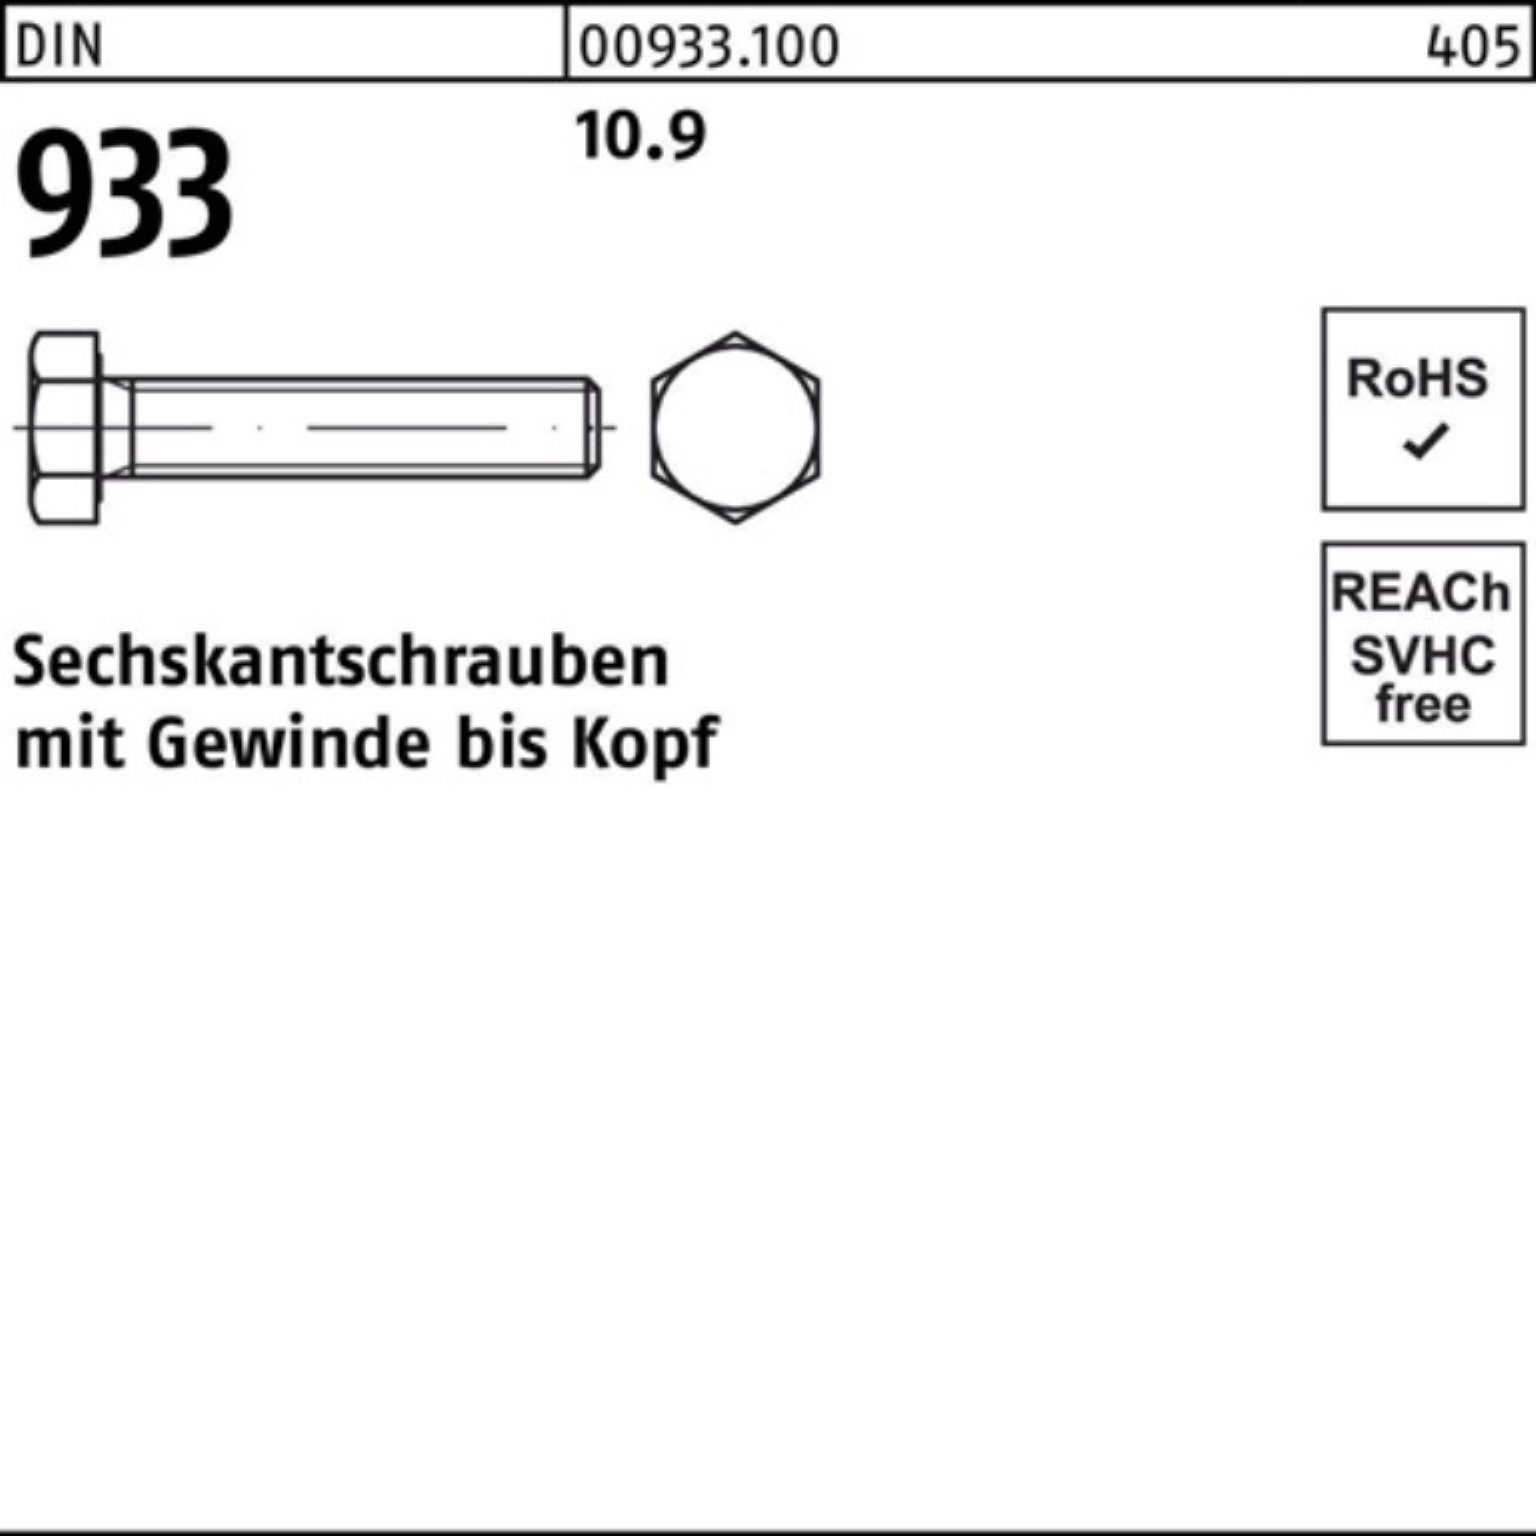 Stück M10x DIN 40 VG 10.9 Sechskantschraube 933 Reyher Pack 93 100er DIN Sechskantschraube 100